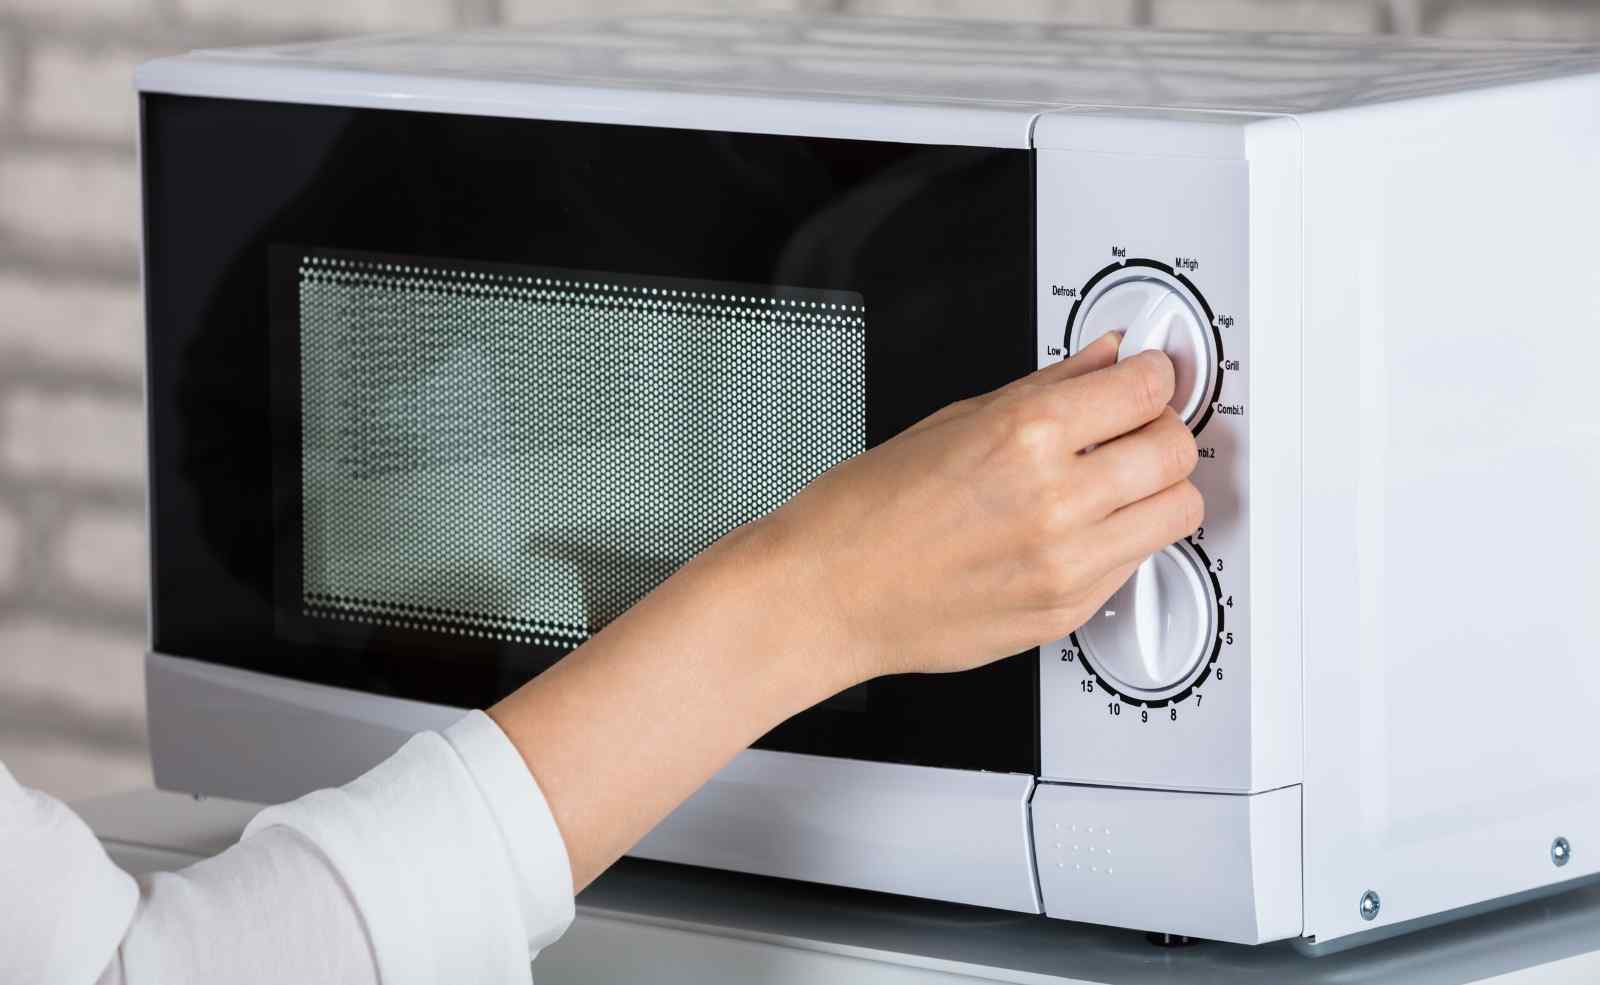 Mikrowellengeschirr: Was darf in die Mikrowelle? - Küchenfinder